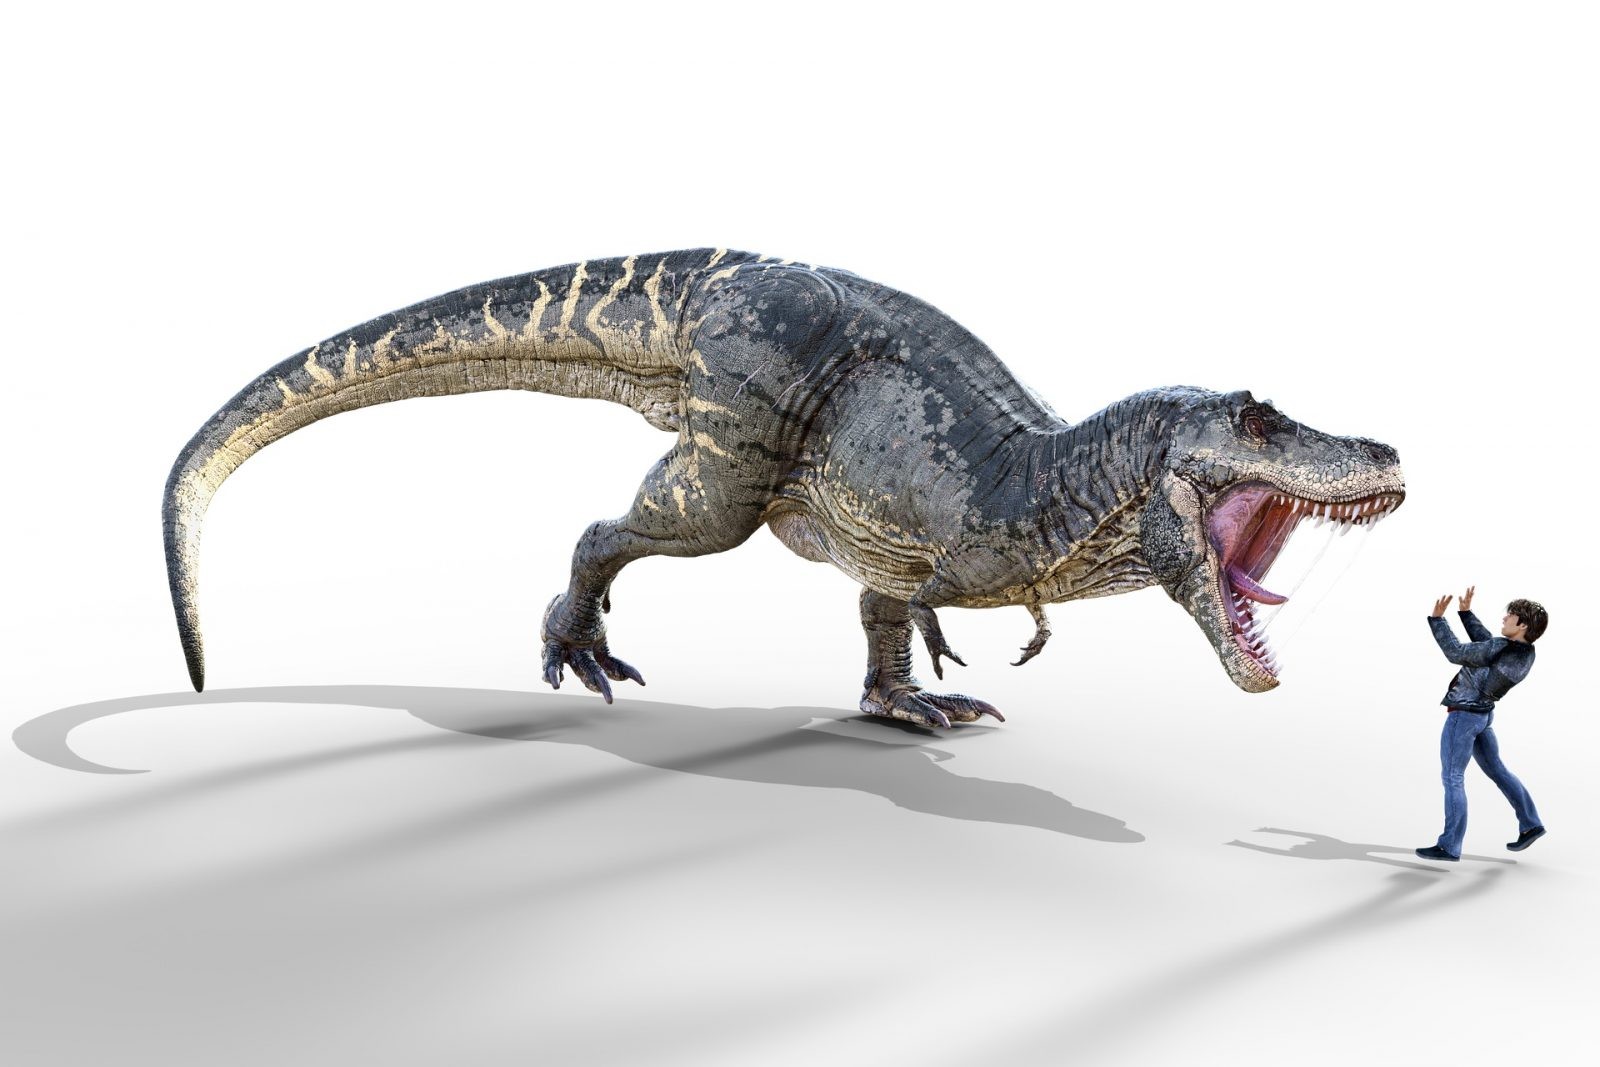 Tyranozaur nie wyglądał tak, jak sądzisz. Nowe badania tworzą odmienny obraz tego drapieżnika